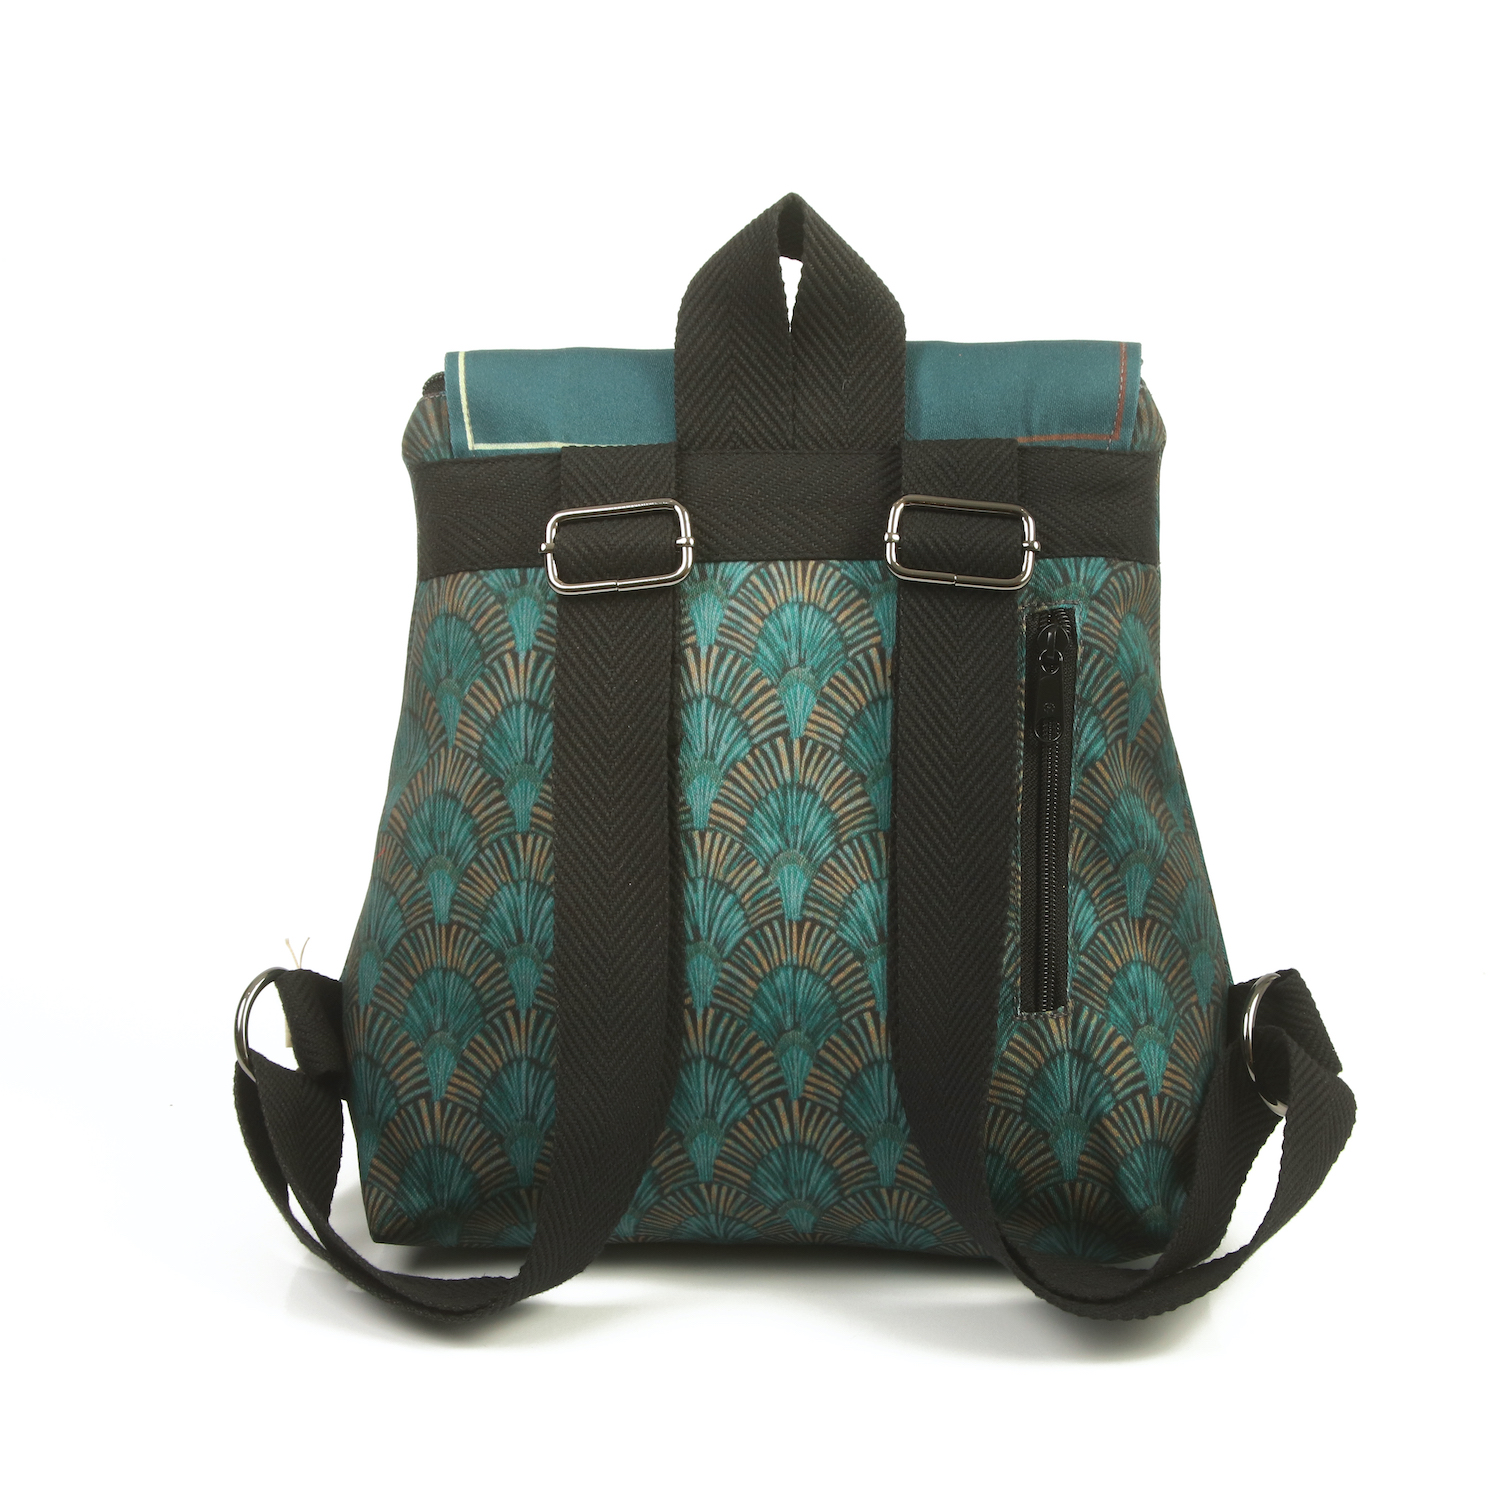 LazyDayz-Designs-Backpack-γυναικείος-σάκος-πλάτης-χειροποίητος bb0302c